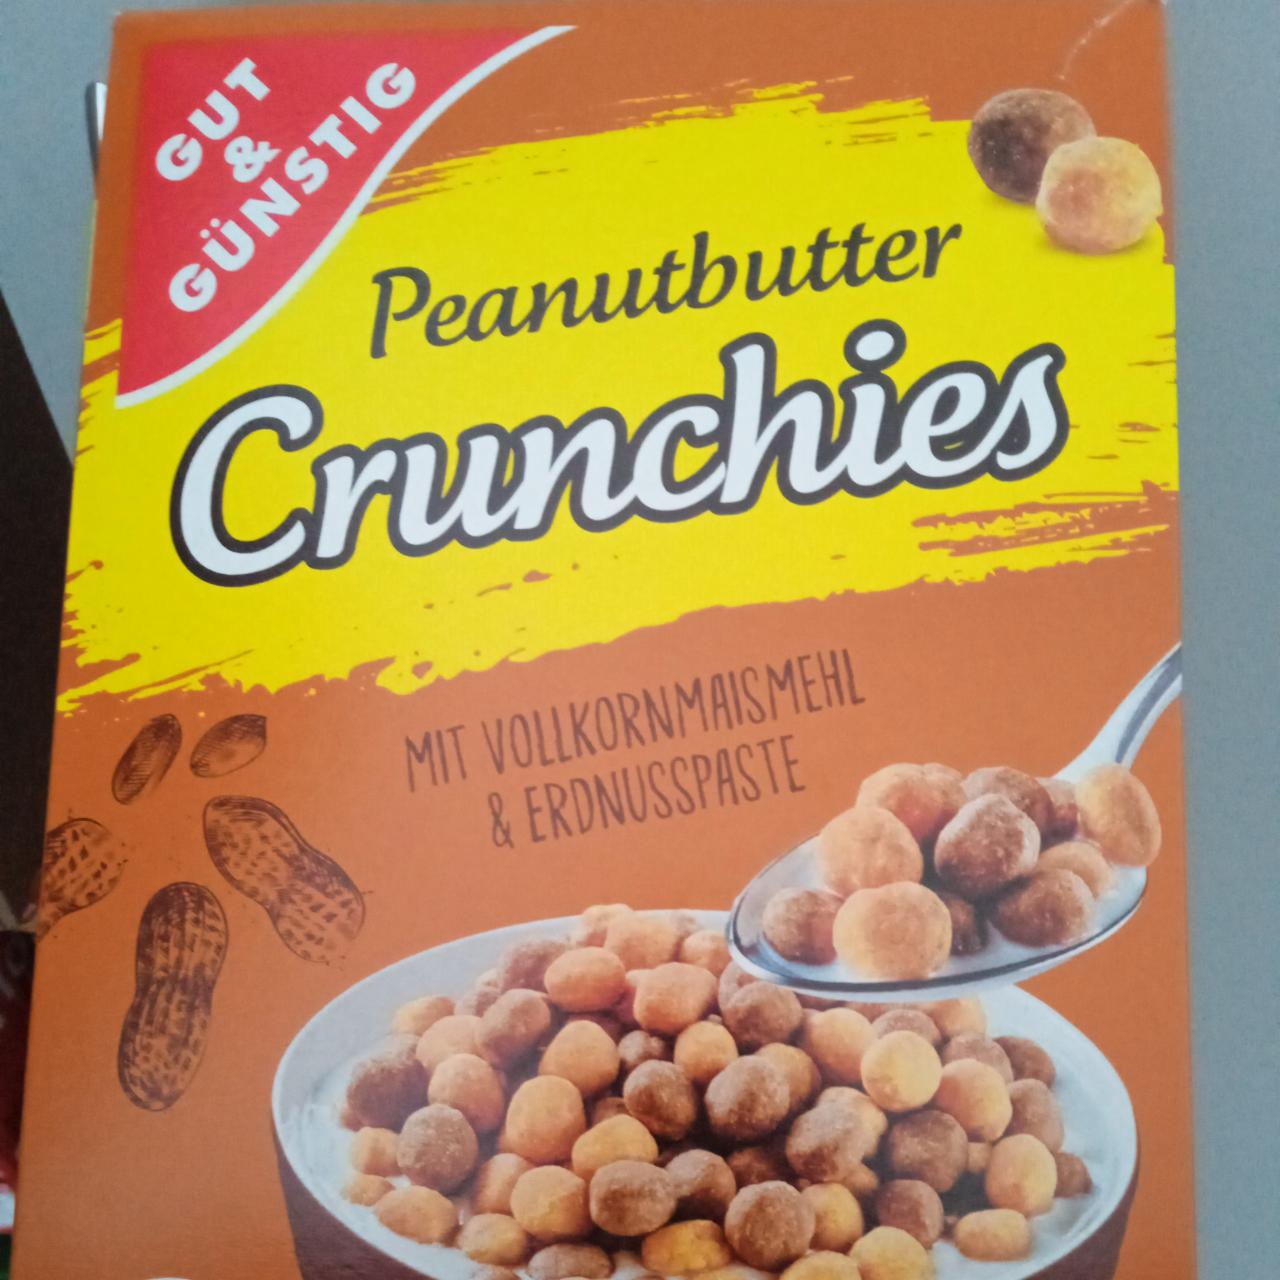 Fotografie - Peanut Butter Crunchies mit Vollkornmaismehl & Erdnusspaste Gut & Günstig